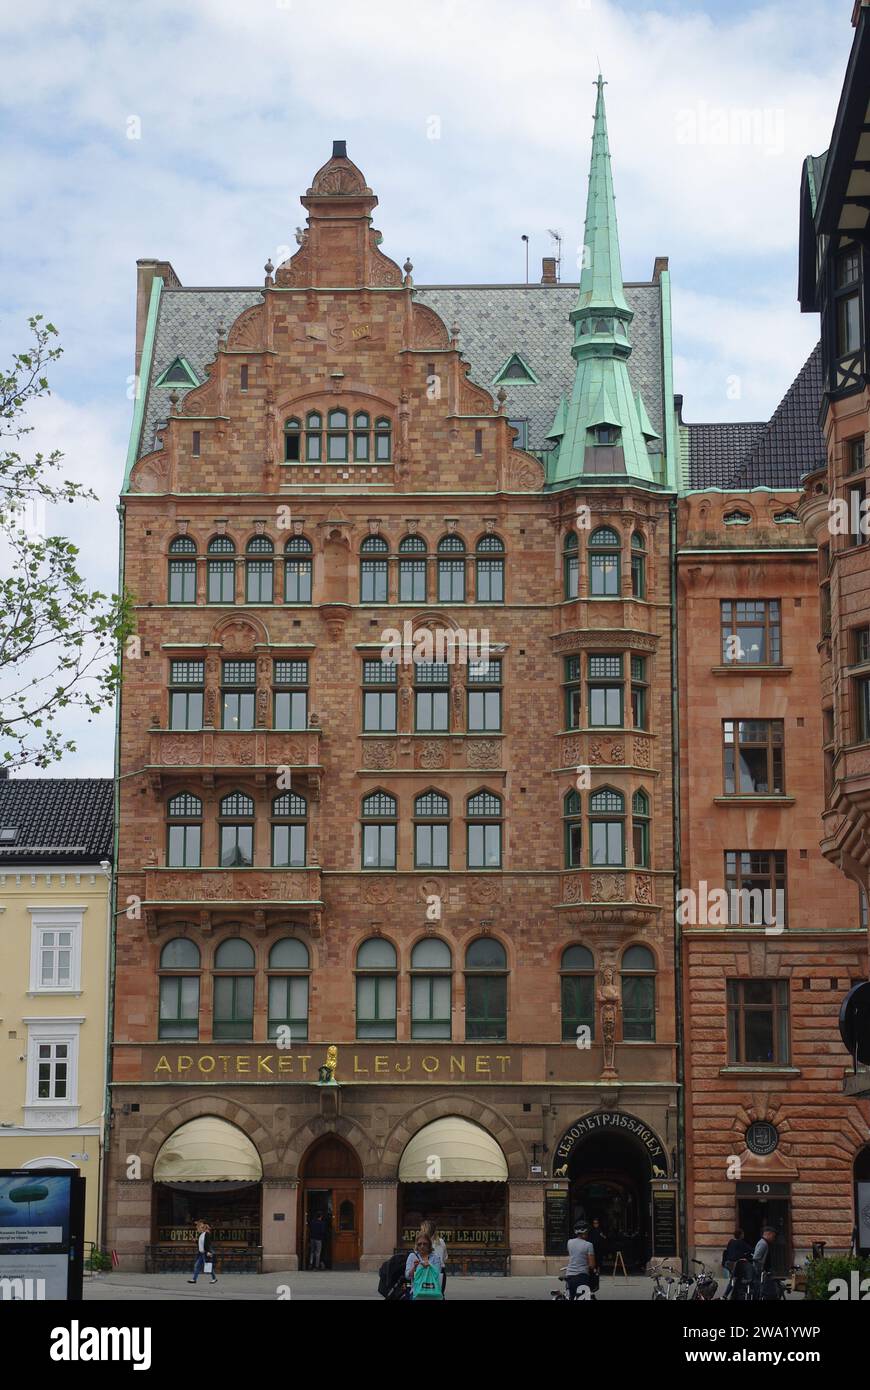 Bâtiment Art Nouveau - Apoteket Lejonet, Stortorget, Malmo, Suède Banque D'Images